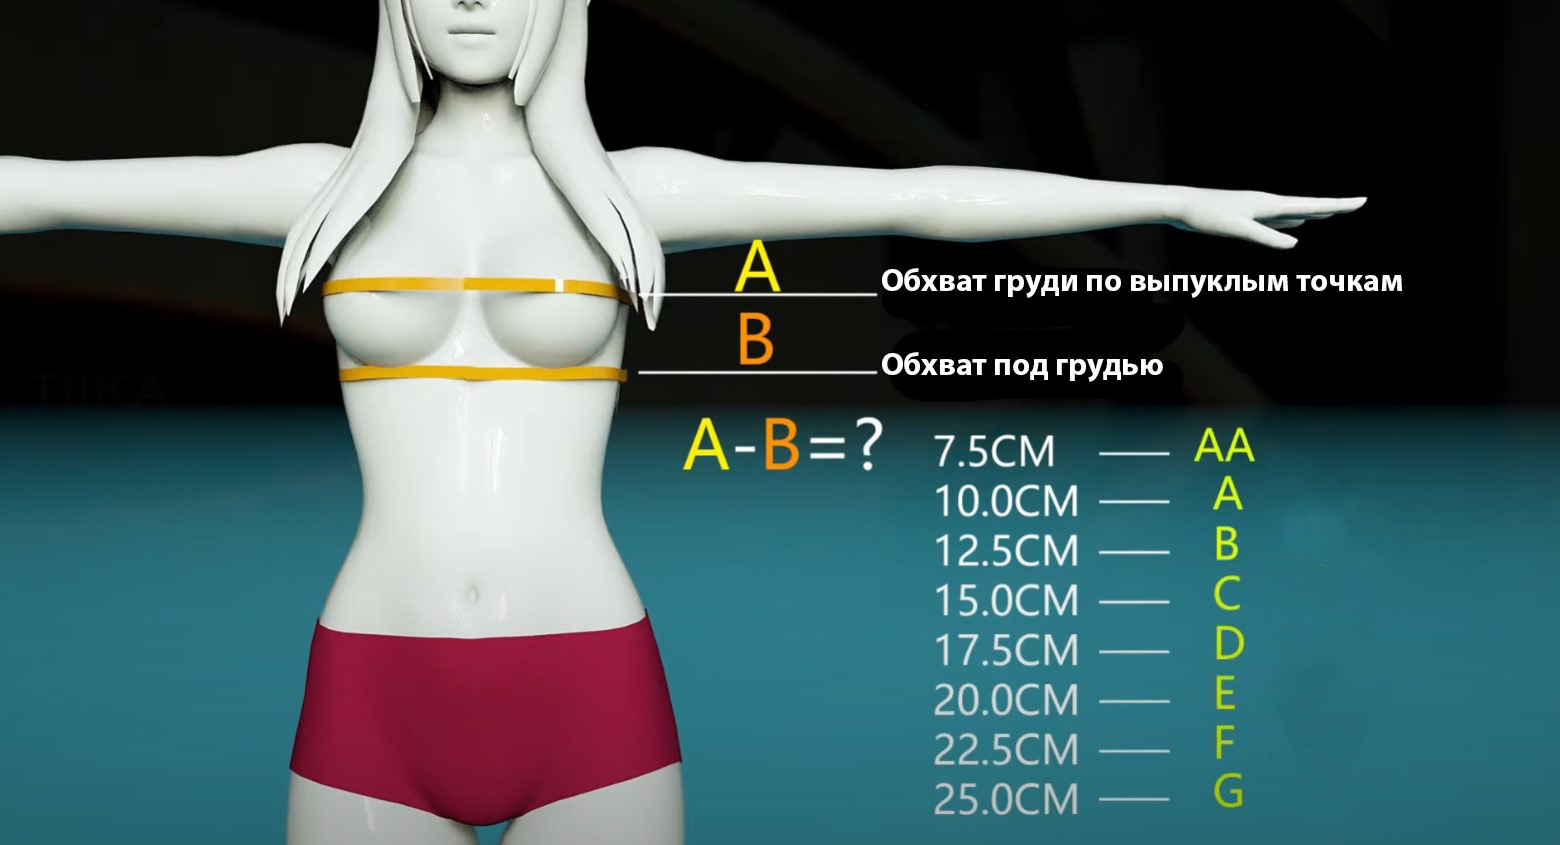 объемы груди у женщин в размерах фото 99